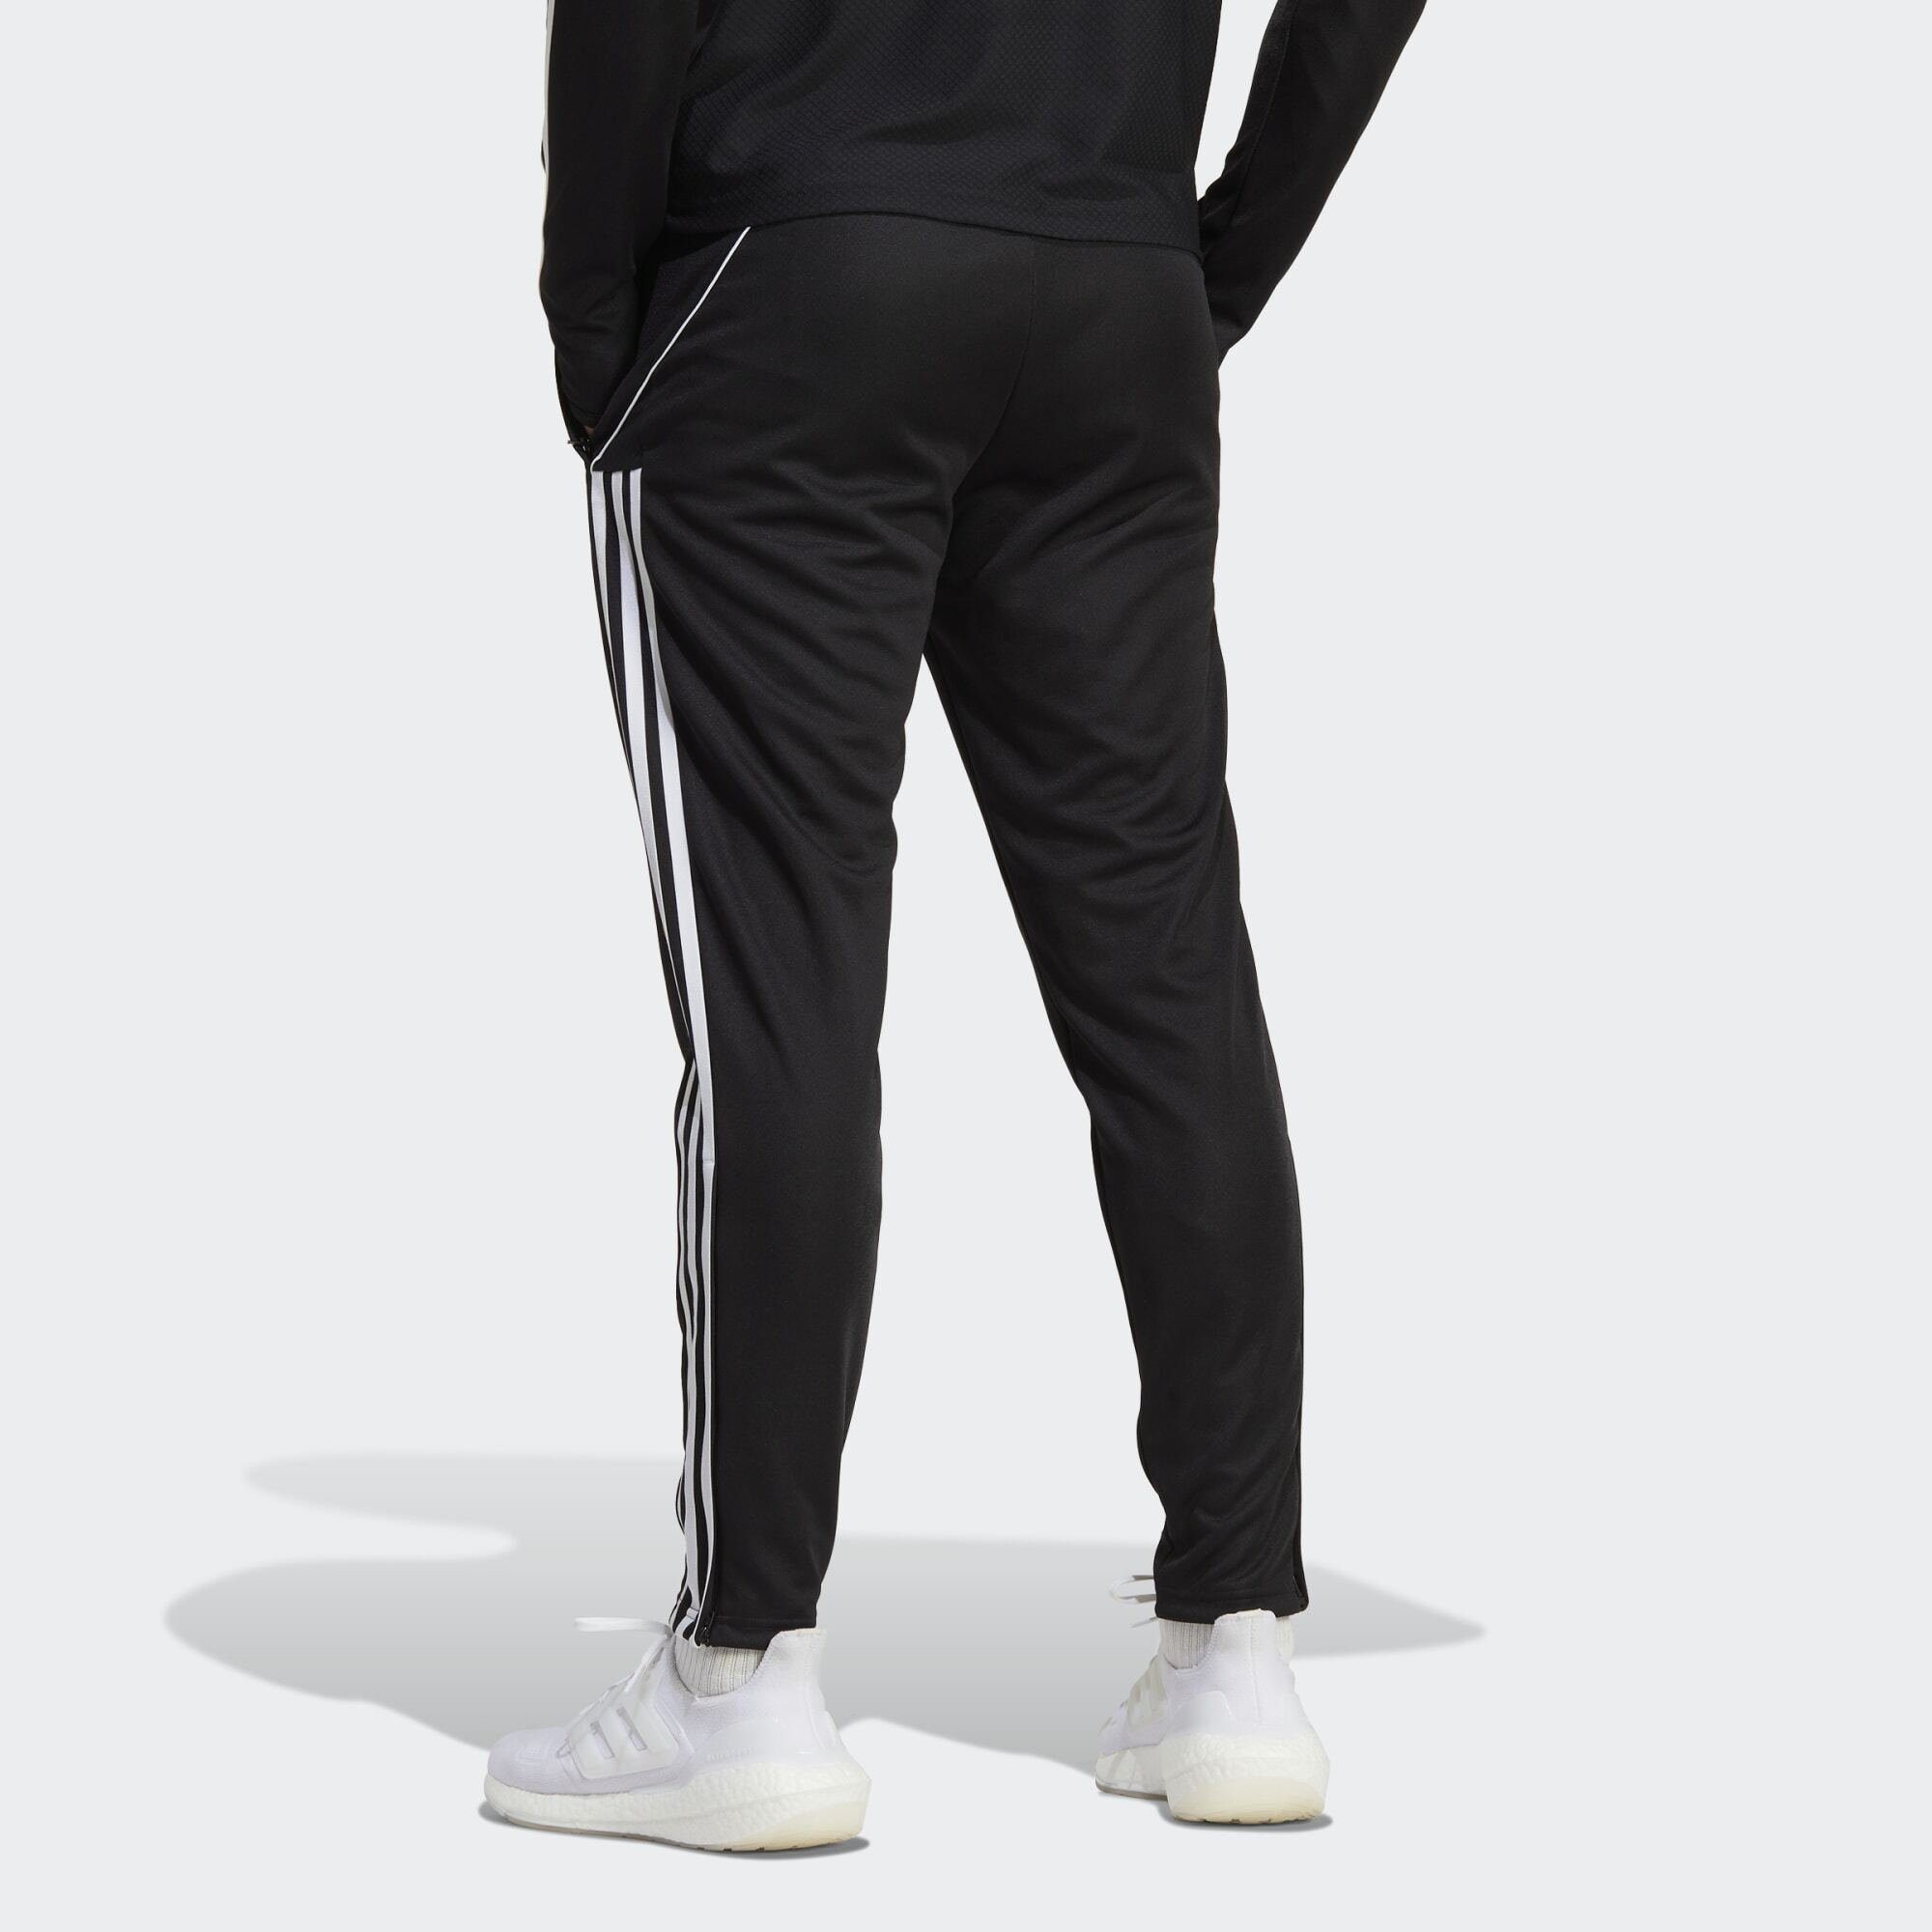 23 LEAGUE Black TRAININGSHOSE Leichtathletik-Hose adidas Performance TIRO